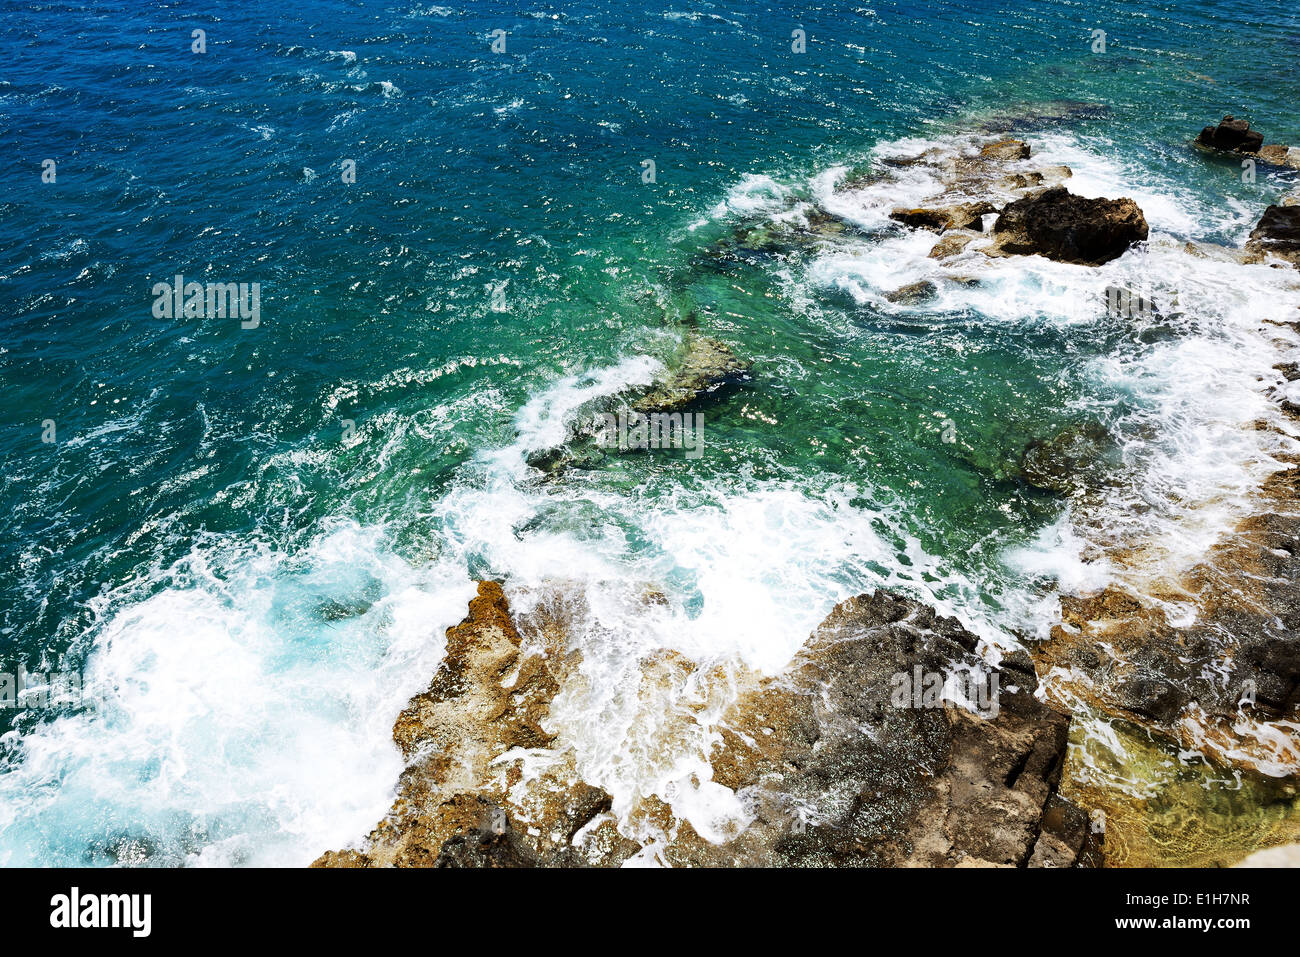 L'eau turquoise à rive de l'île de Spinalonga, la Crète, Grèce Banque D'Images